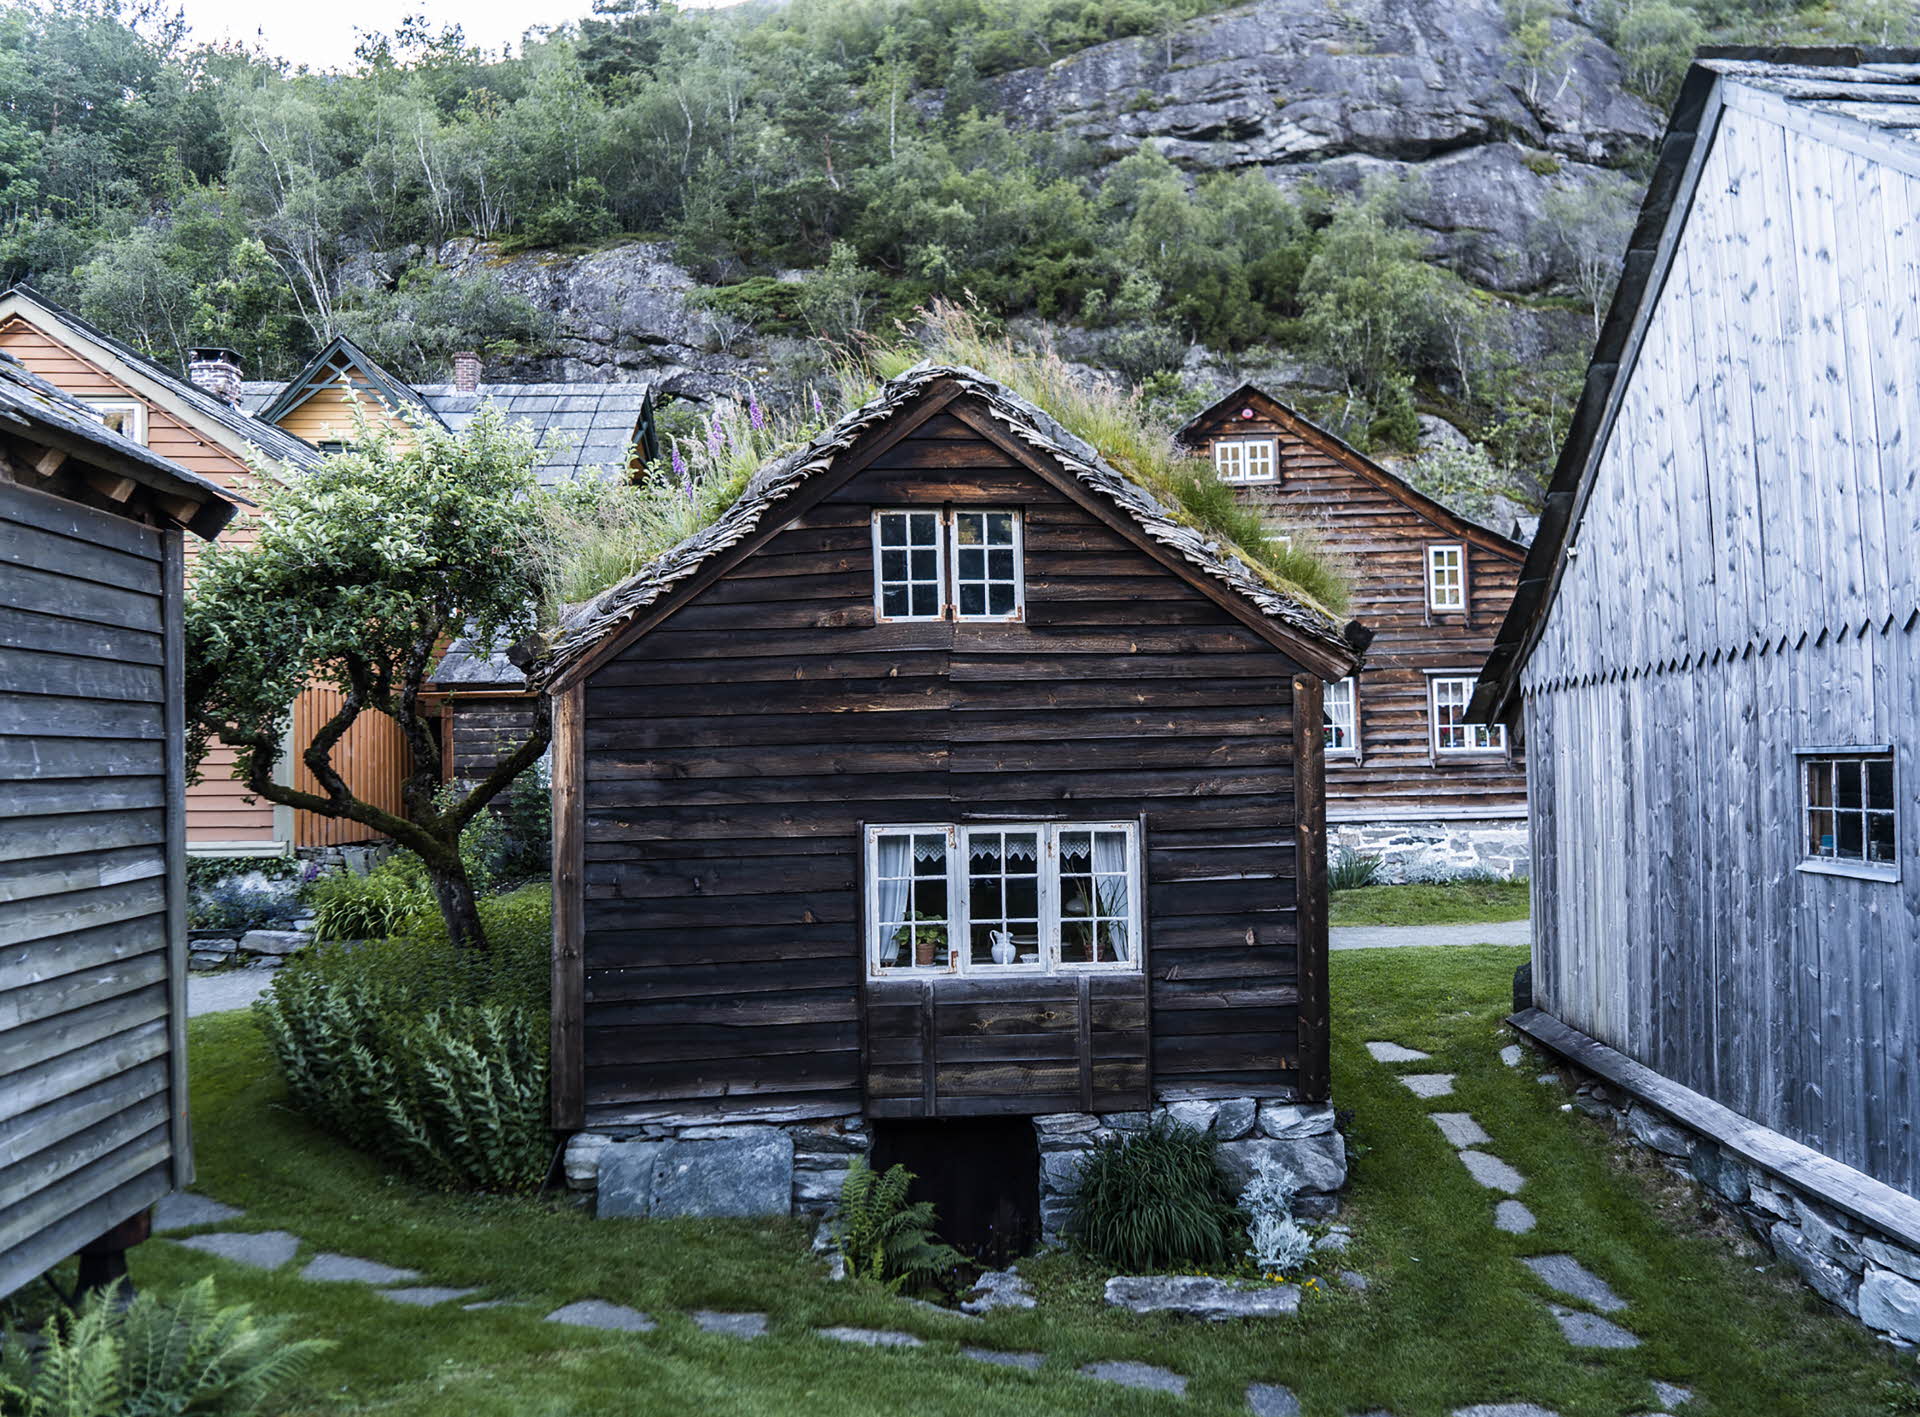 ノルウェー ハルダンゲル(Hardanger)のアガトゥネット(Agatunet)の小さな茶色の木の家  初期 1220  天然石の上にある屋根の上の草